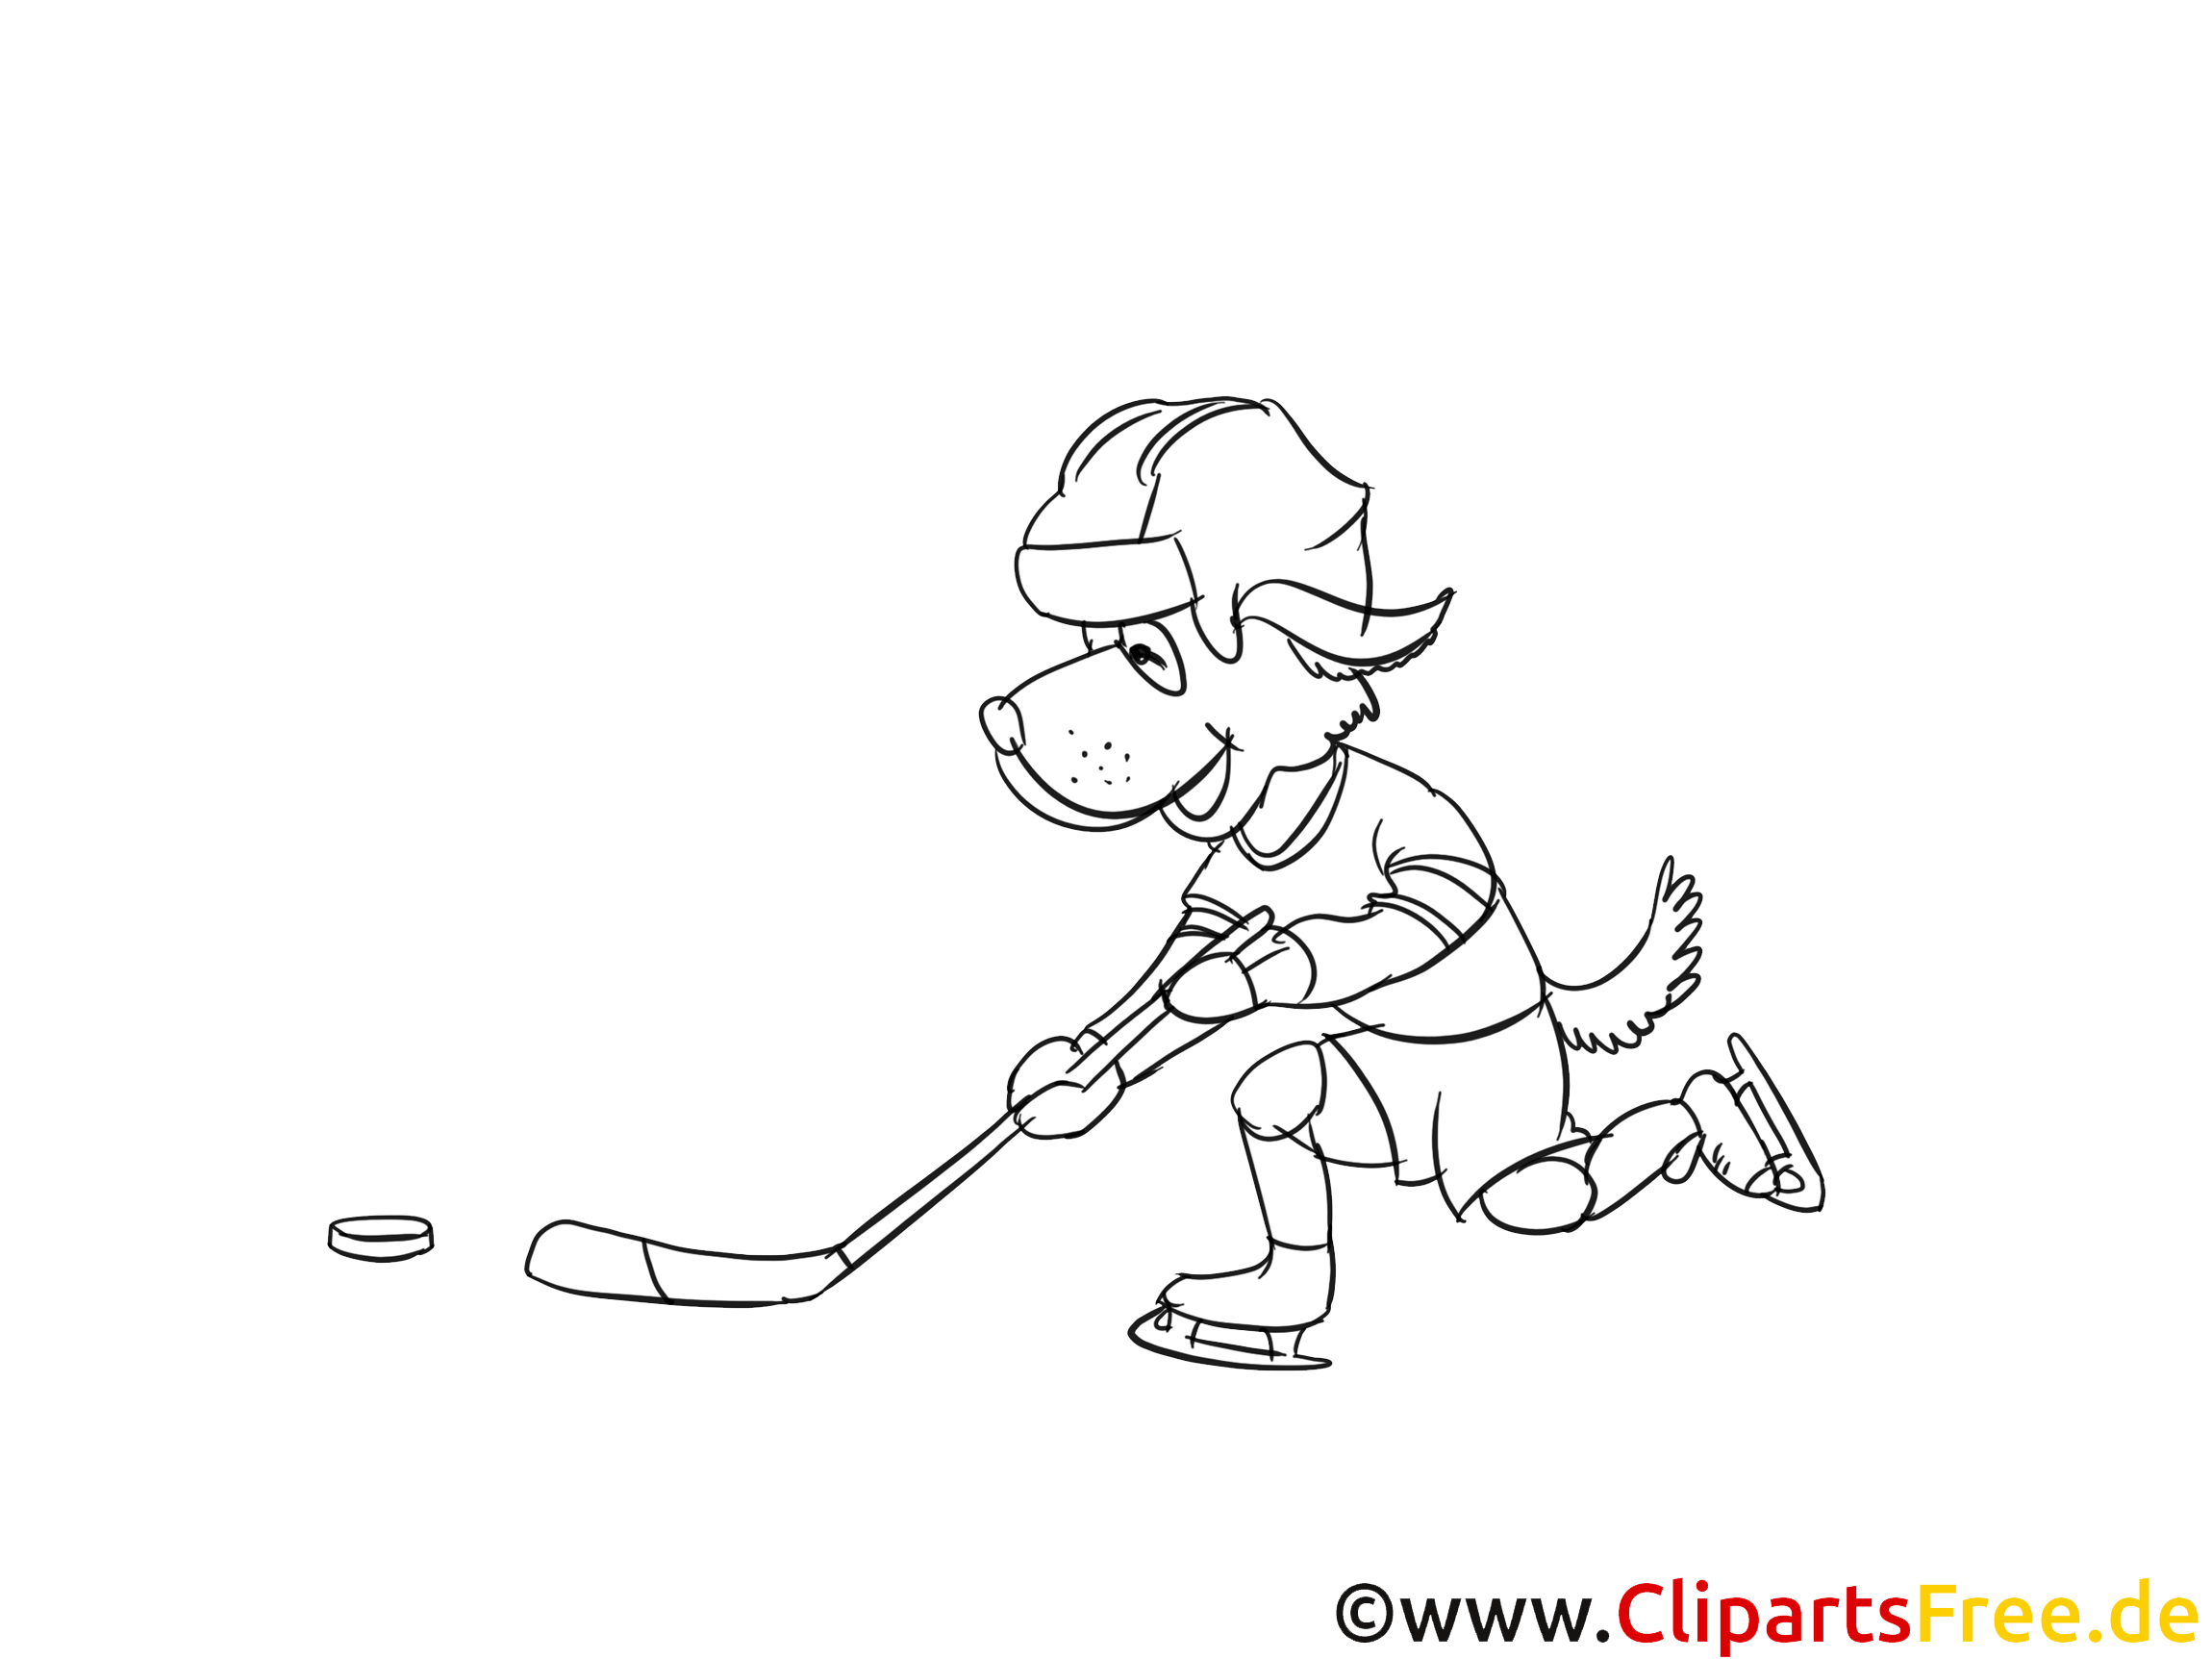 Sport d'hiver clip arts – Hockey à imprimer